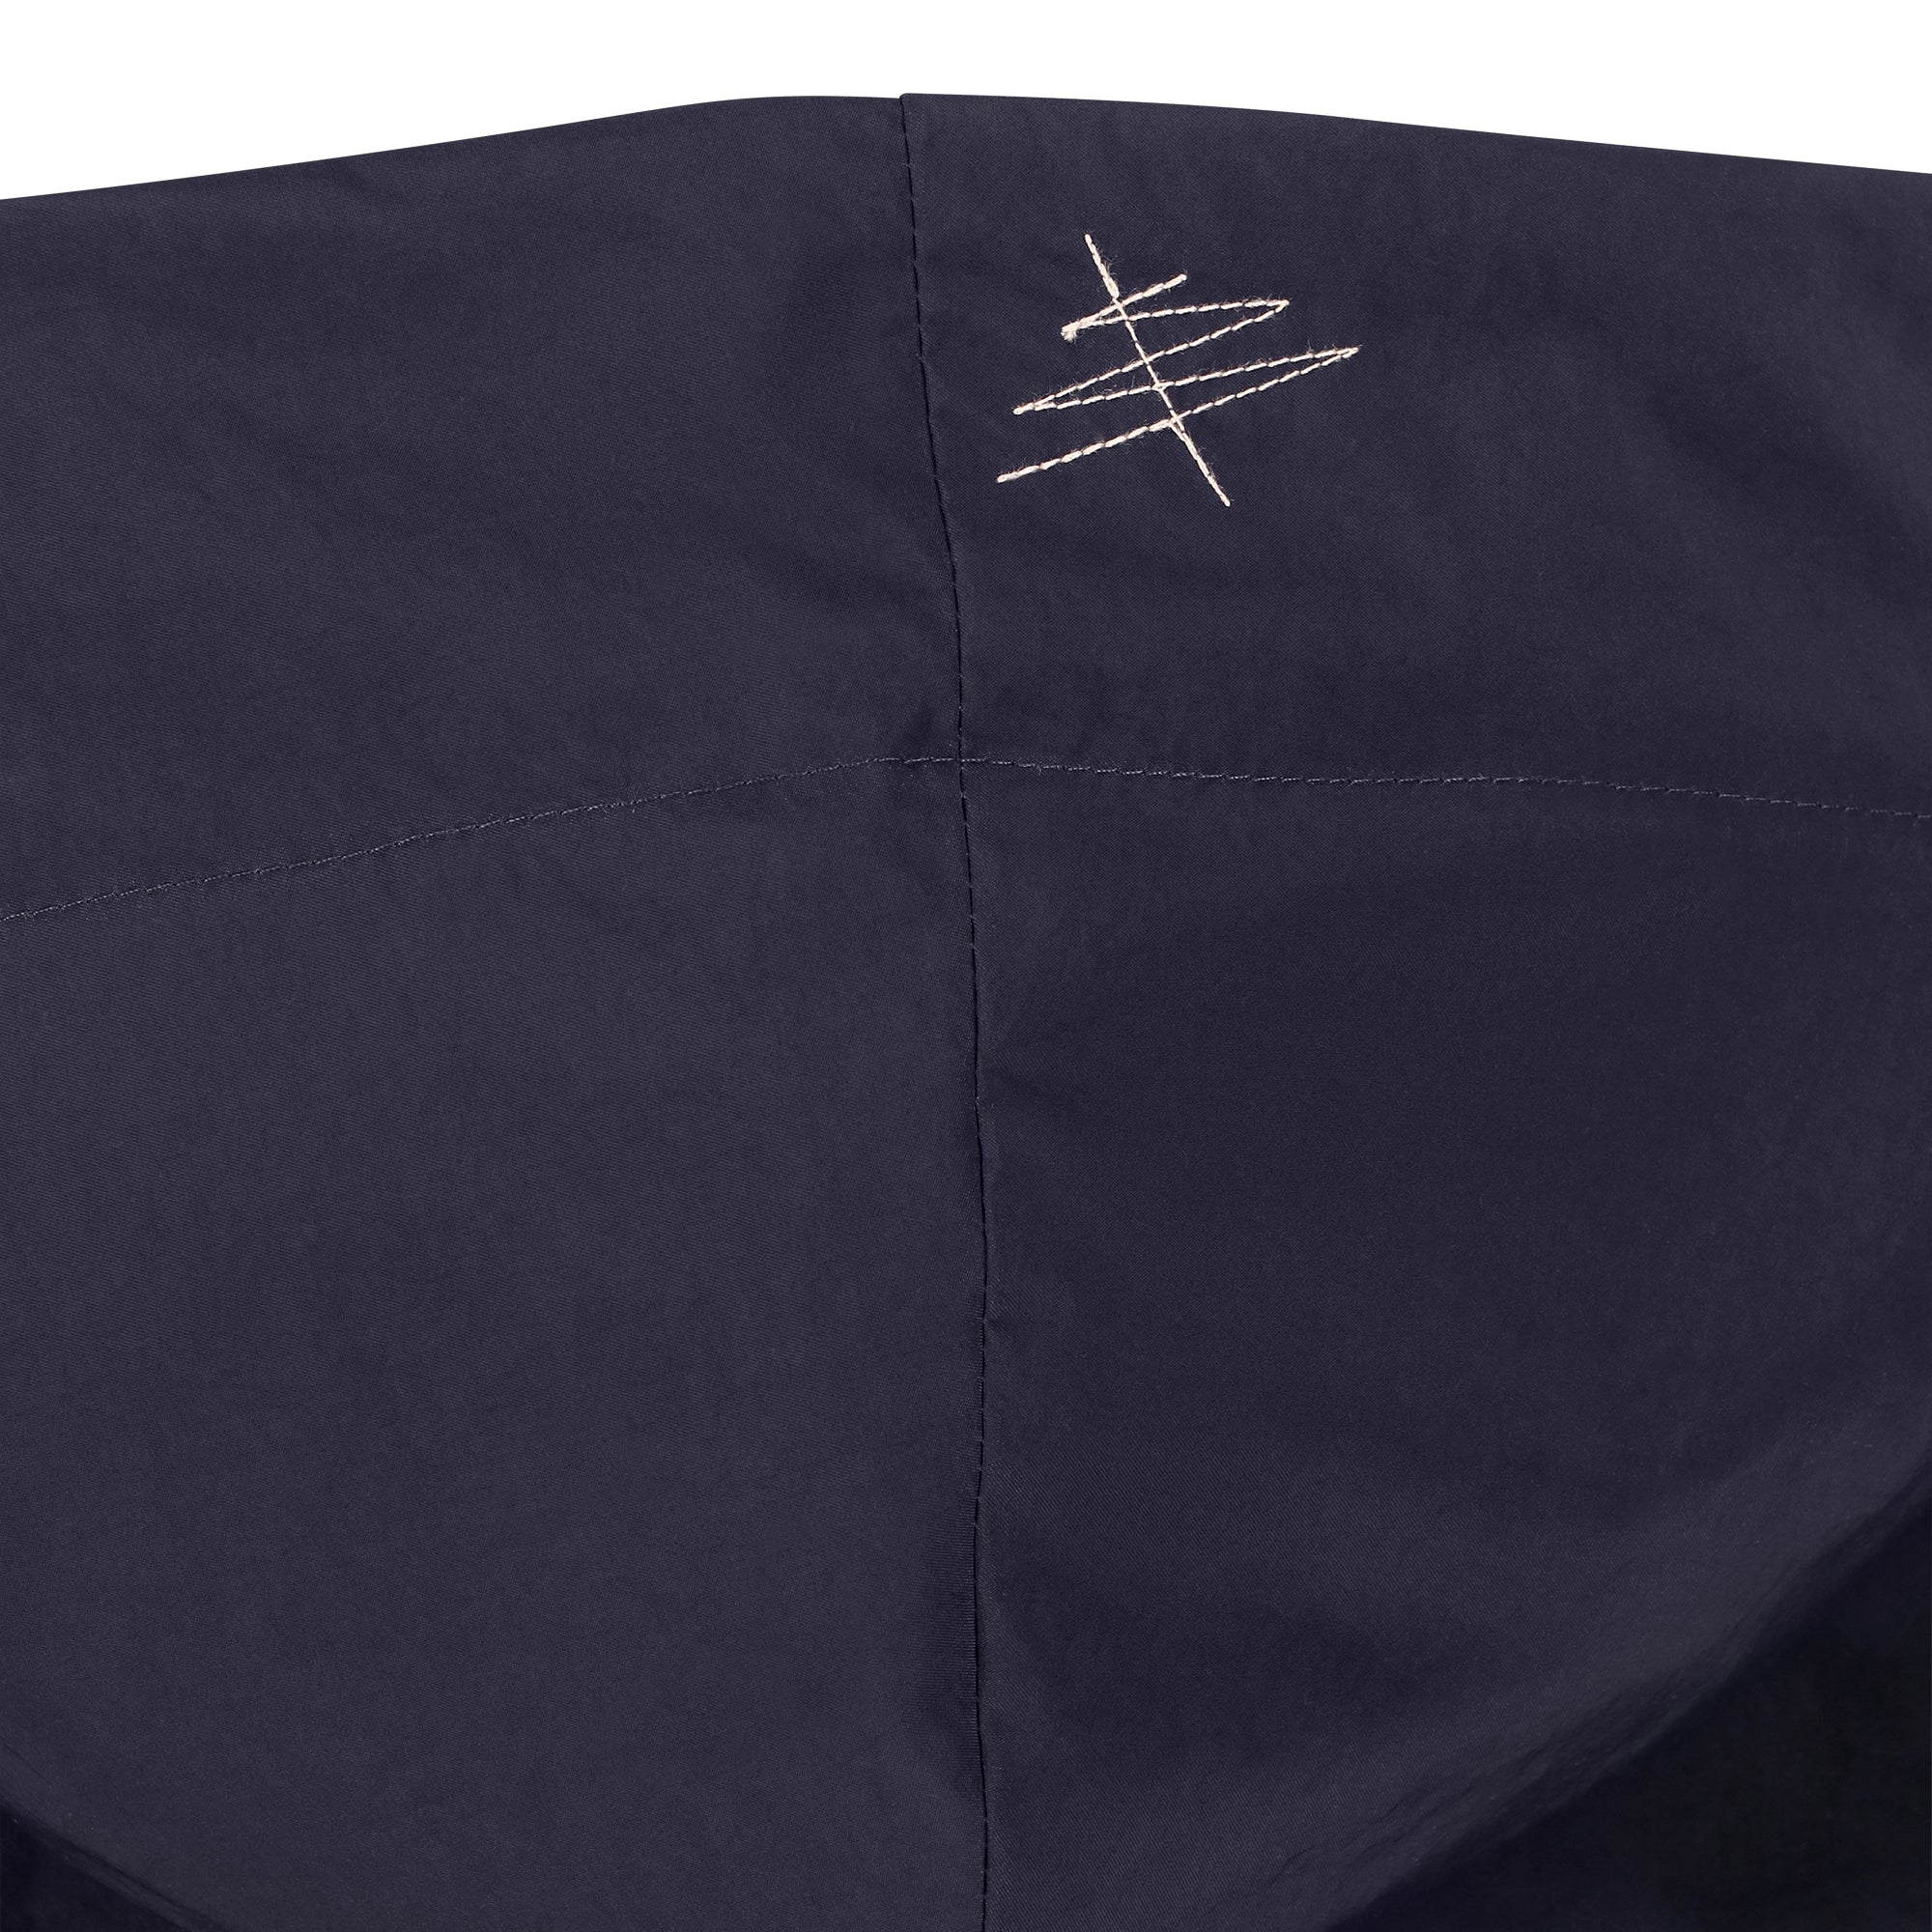 Mistral raincoat - Blue Night color - hood detail